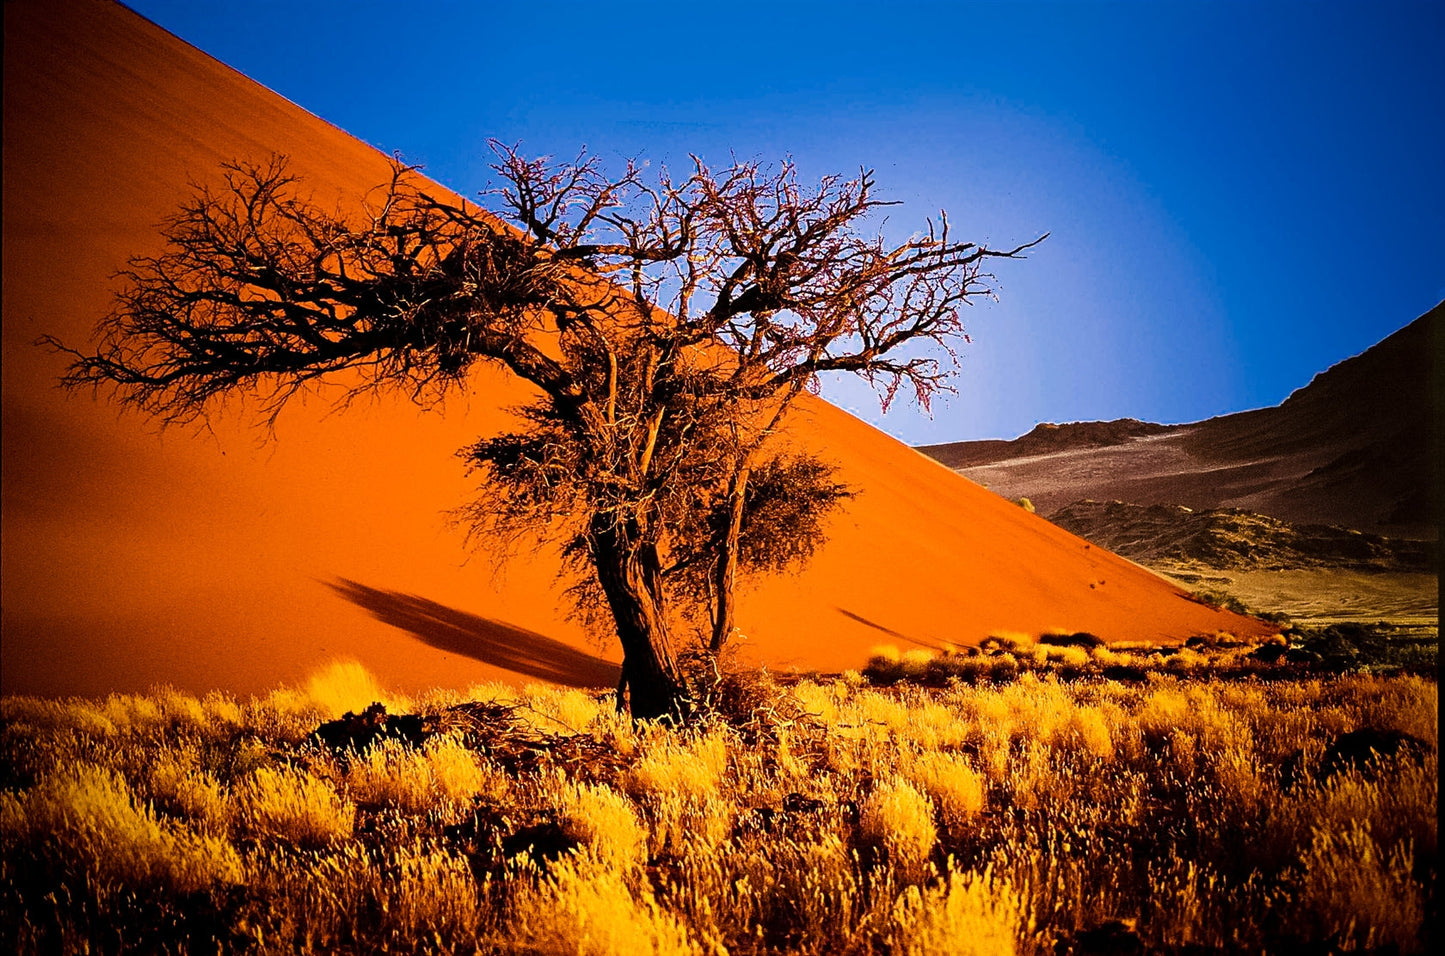 NAMIBIA ANIMA PRIMORDIALE PARTENZA 27 MARZO VIAGGIO DI GRUPPO SISTEMAZIONE TENDA